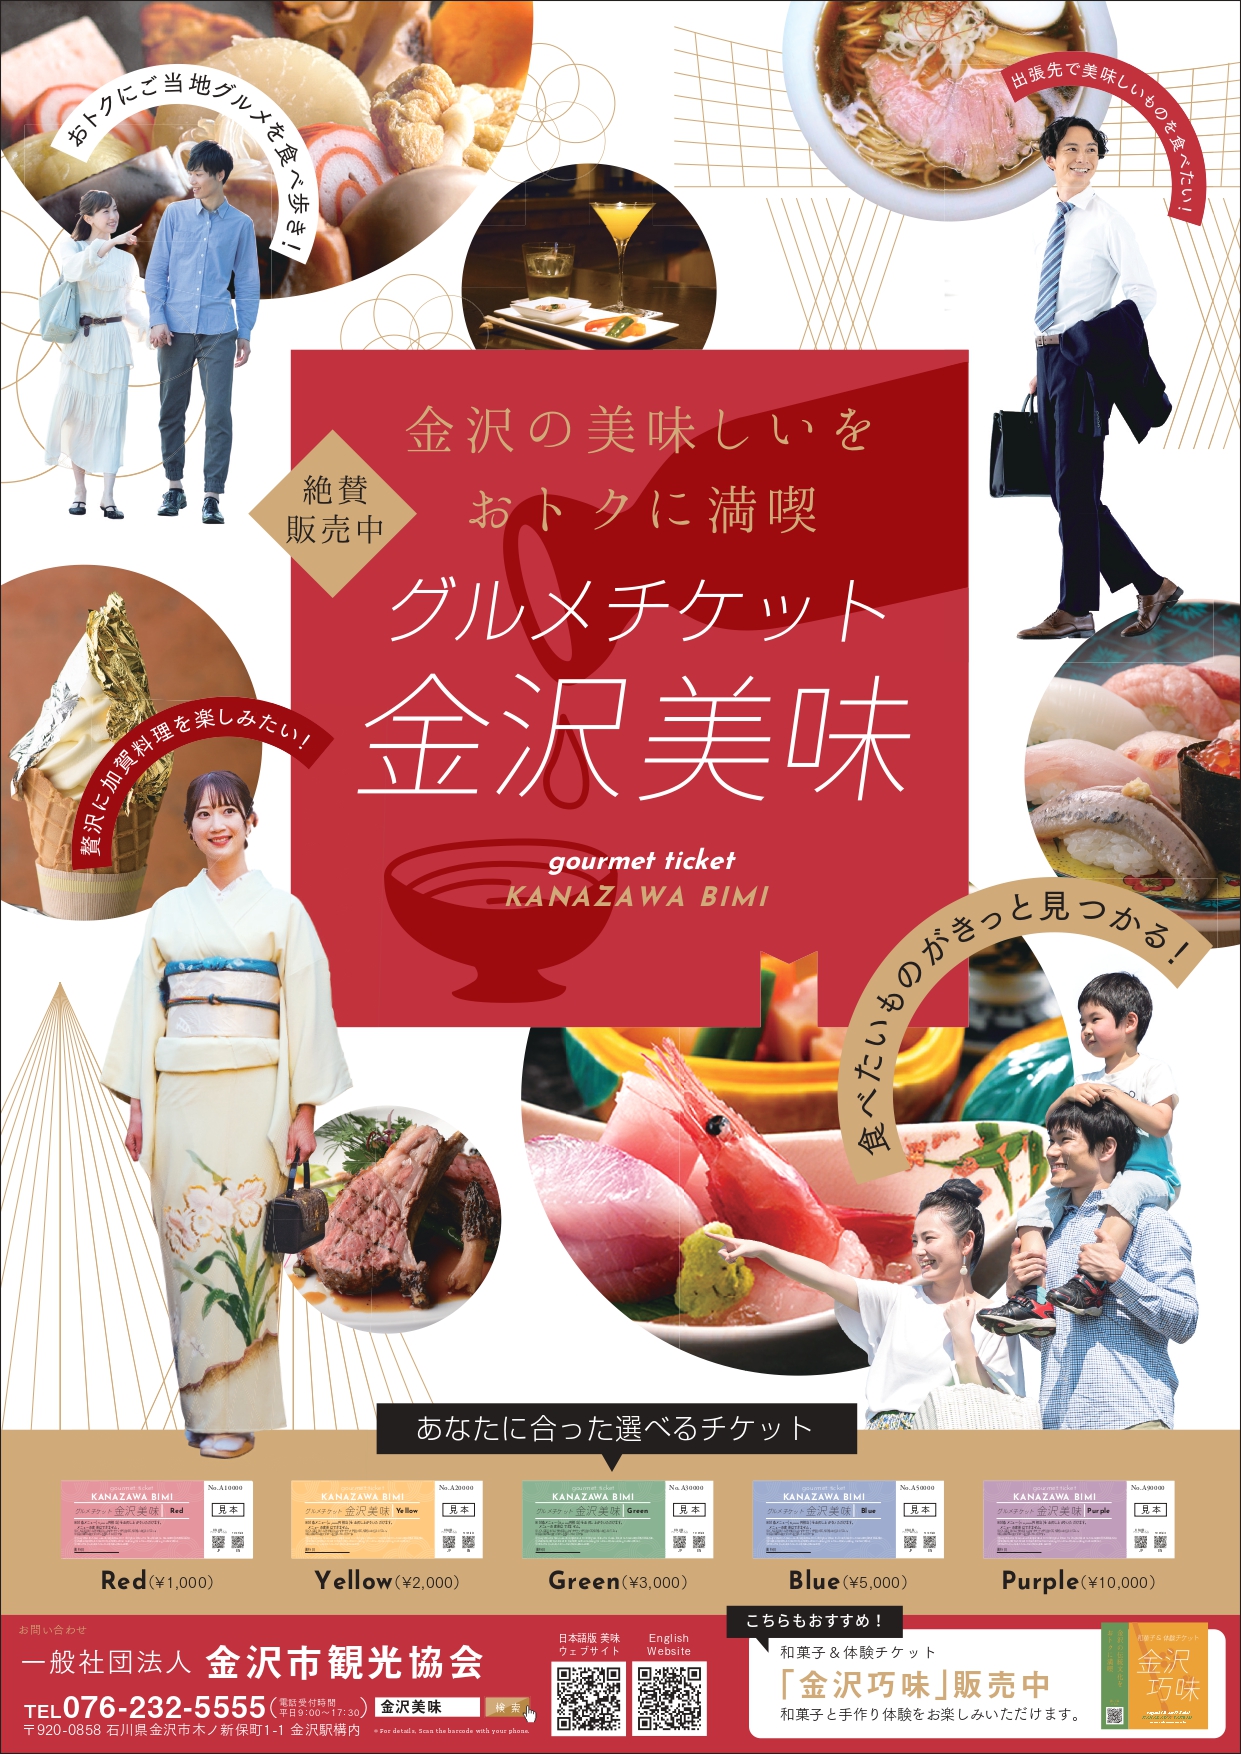 有効期限は3月末】地元民に人気の「金沢美味クーポン」が、4月より「グルメチケット金沢美味」にリニューアル。 | 金沢の観光スポット・イベント案内「金沢 日和」